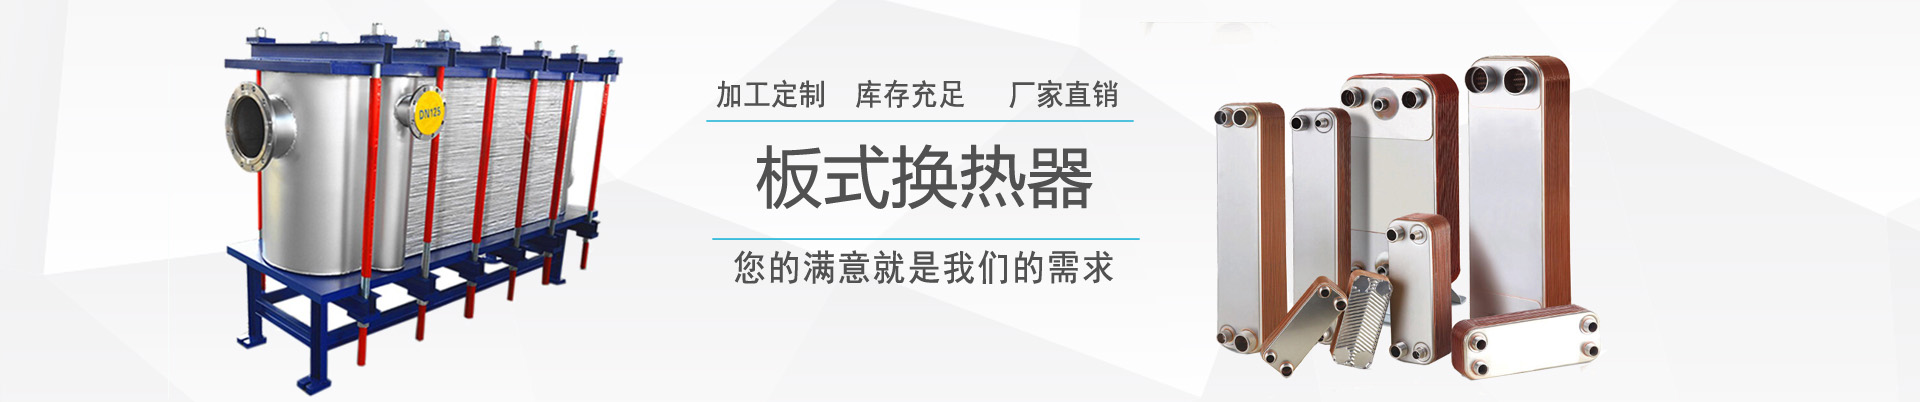 容積式換熱器 - 產品中心 - ,換熱器,板式換熱器,換熱器機組,上海將星化工設備有限公司